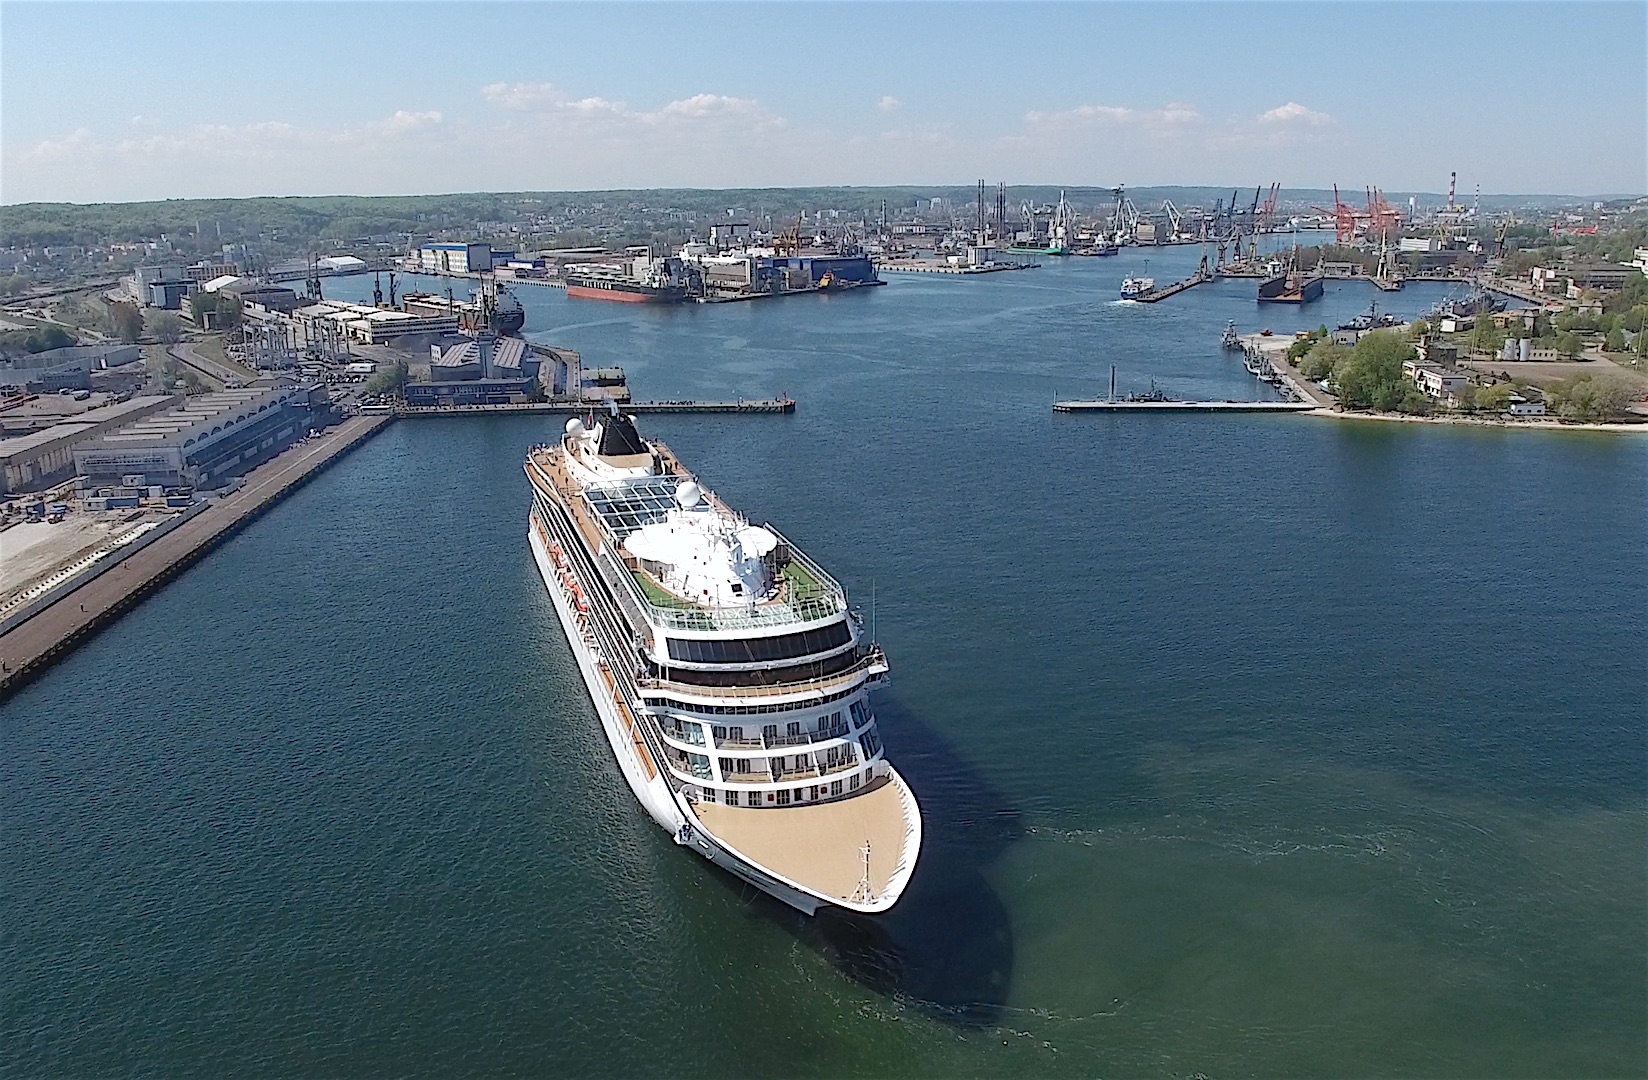 More cargo handling at the Port of Gdynia - MarinePoland.com